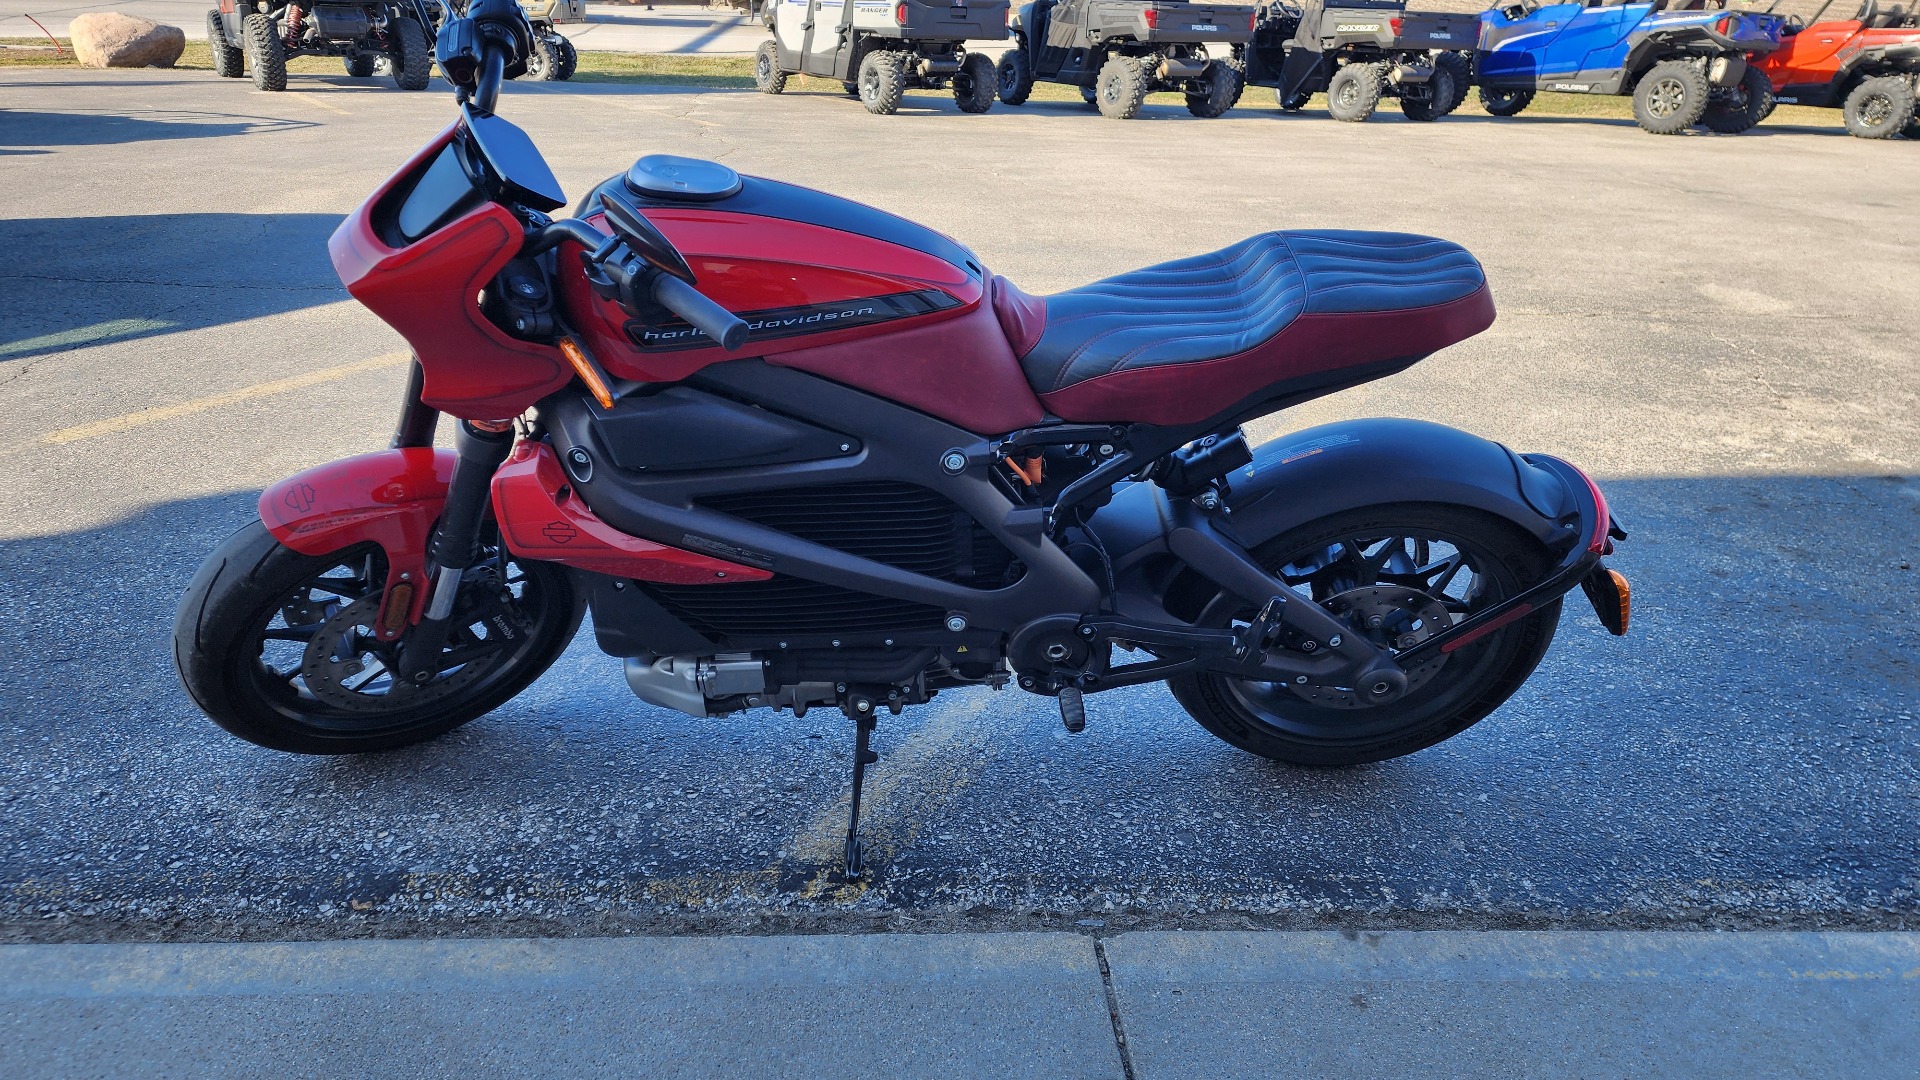 2020 Harley-Davidson Livewire™ in Fort Dodge, Iowa - Photo 3